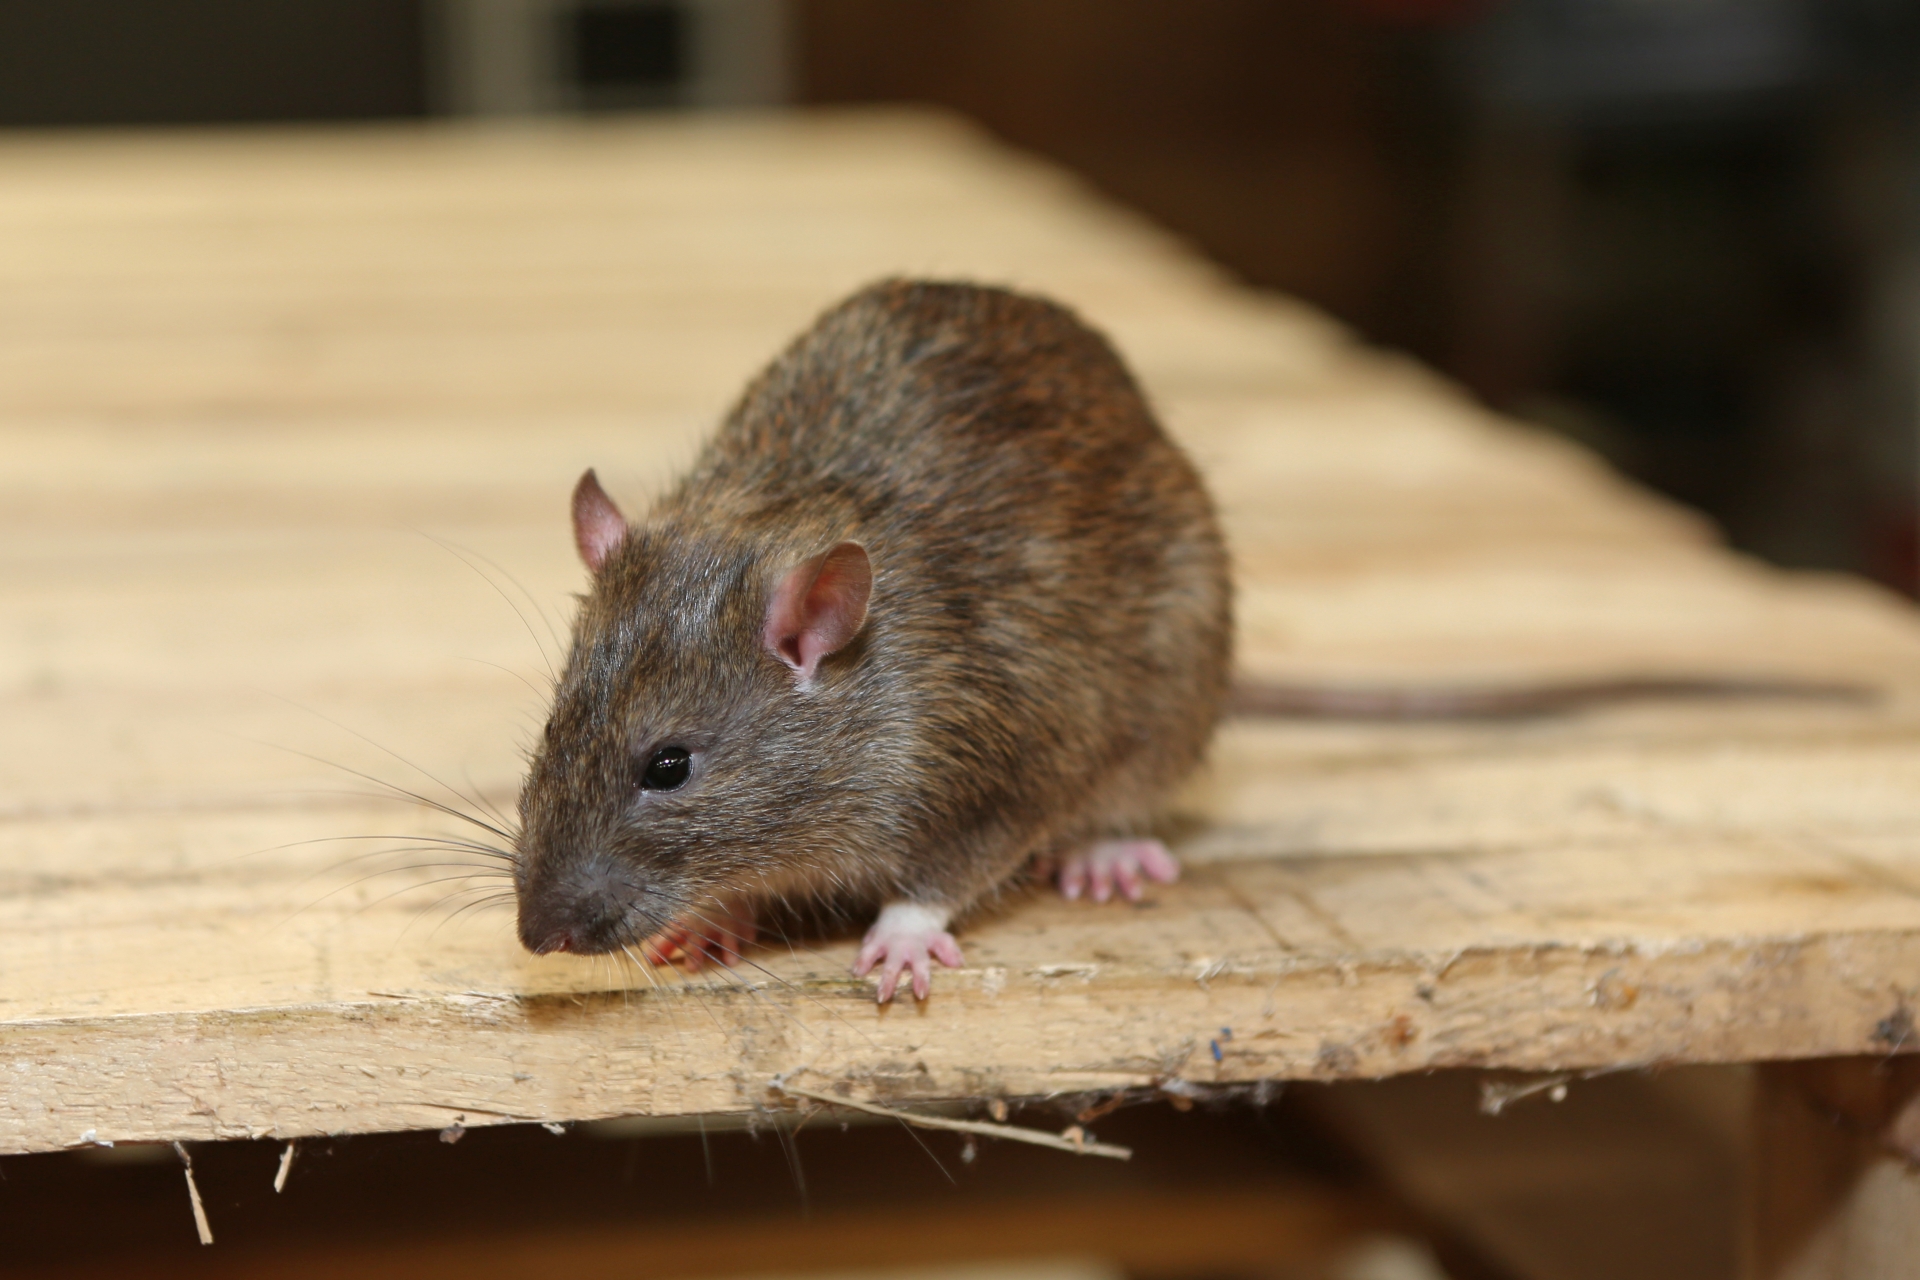 Rat extermination, Pest Control in Weybridge, Oatlands, KT13. Call Now 020 8166 9746